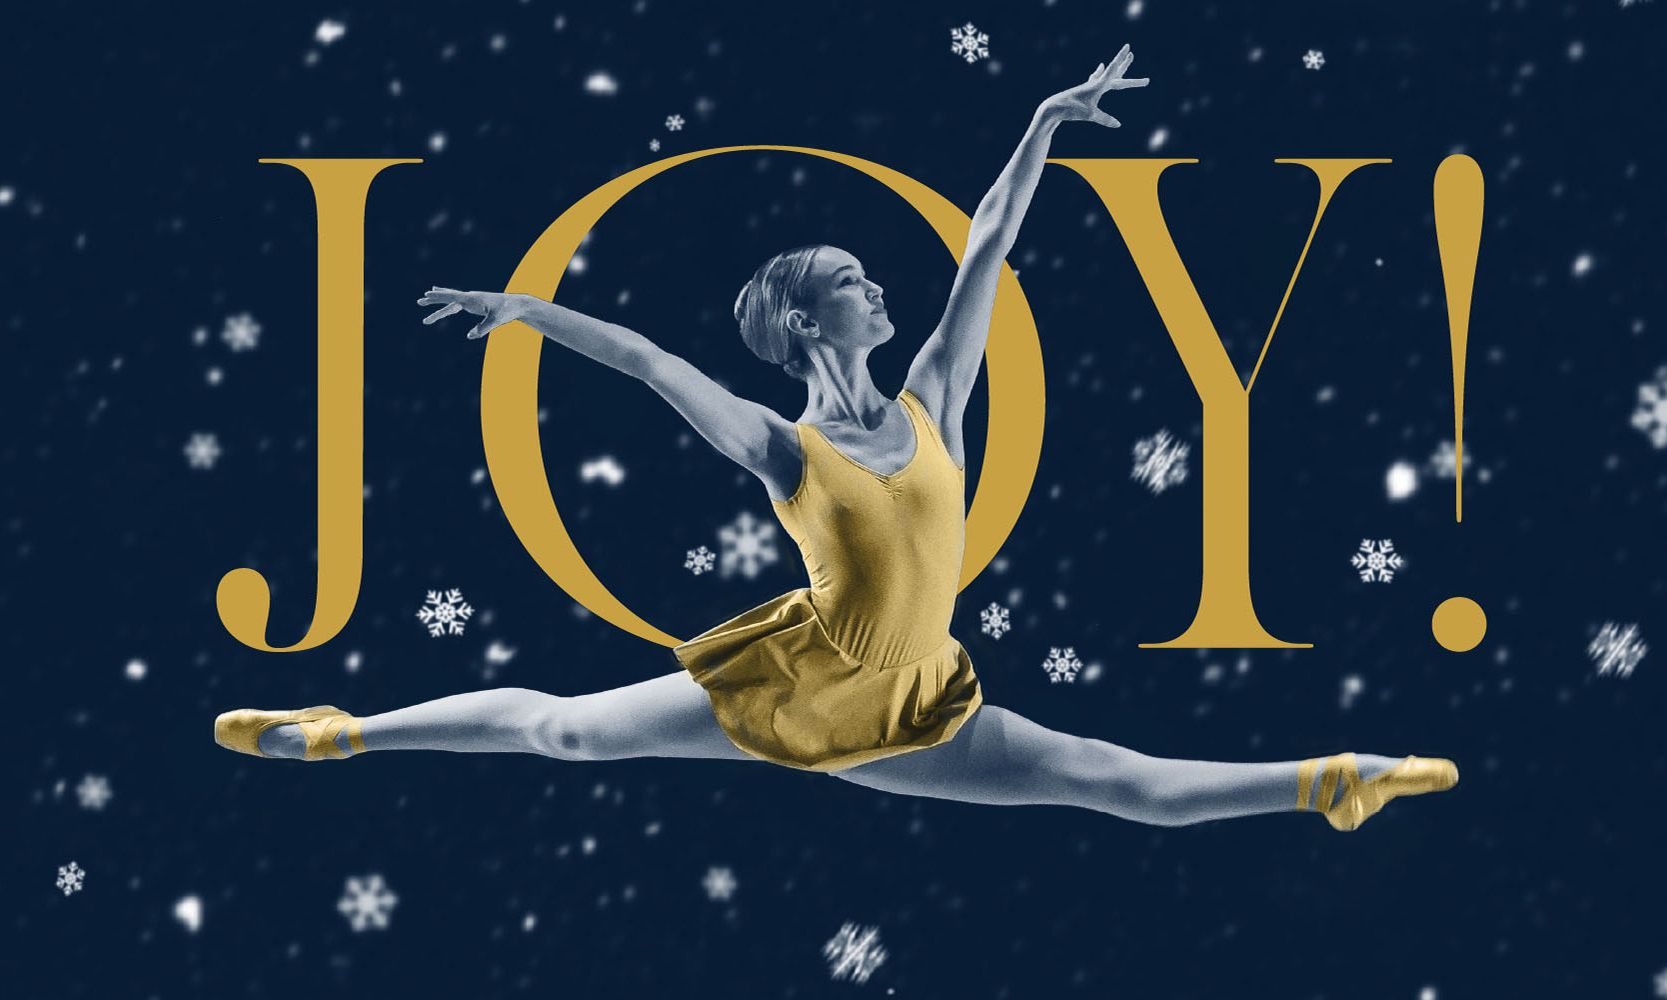 Joy! A Winter Dance Celebration